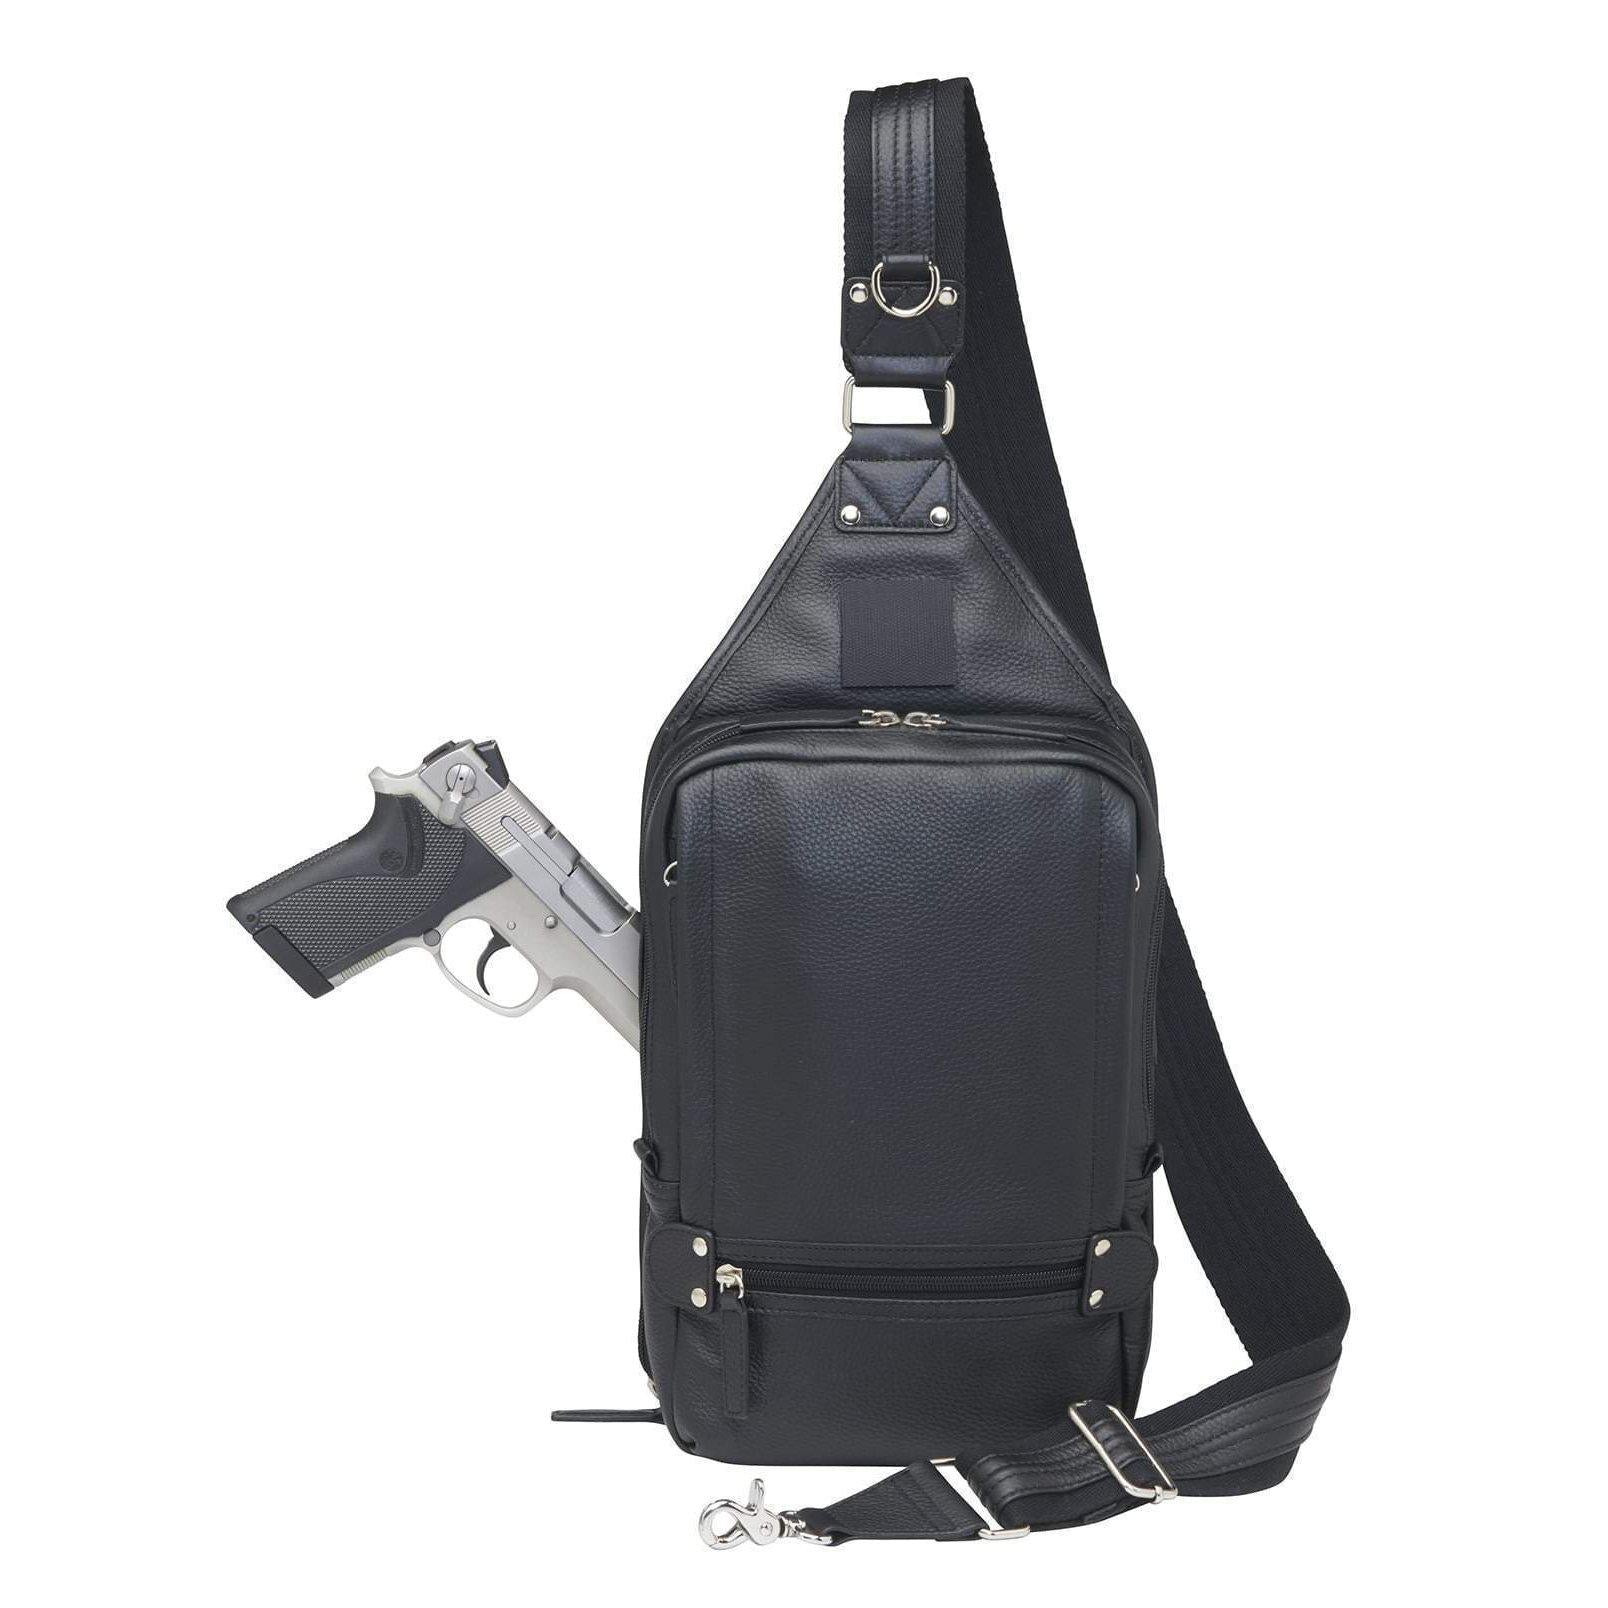 SIDE SHOULDER CONCEAL CARRY BACKPACK - Bags